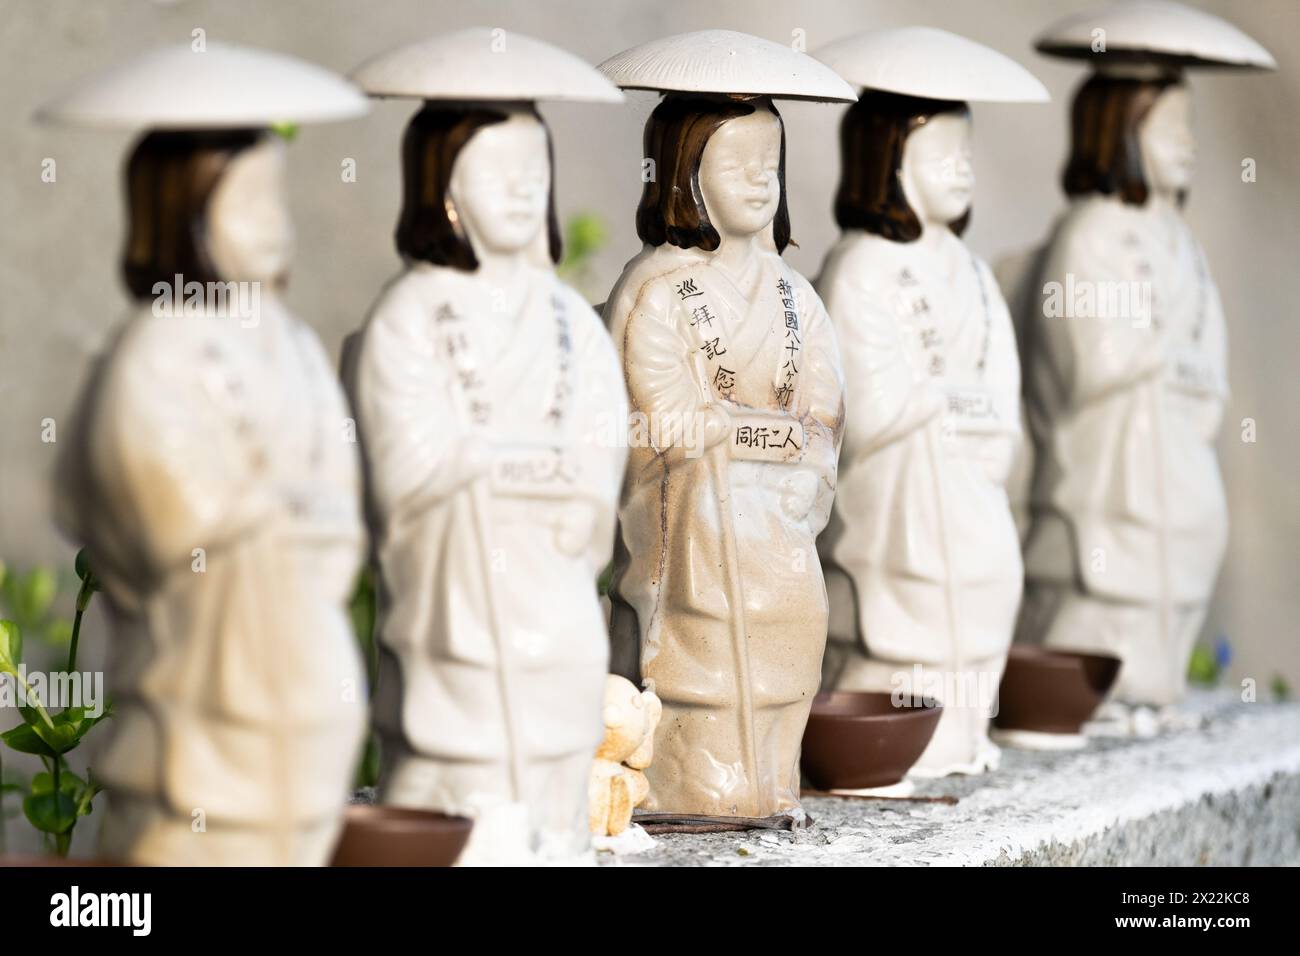 Monk sculptures, Minamichita, Aichi Prefecture, Japan, Asia Stock Photo